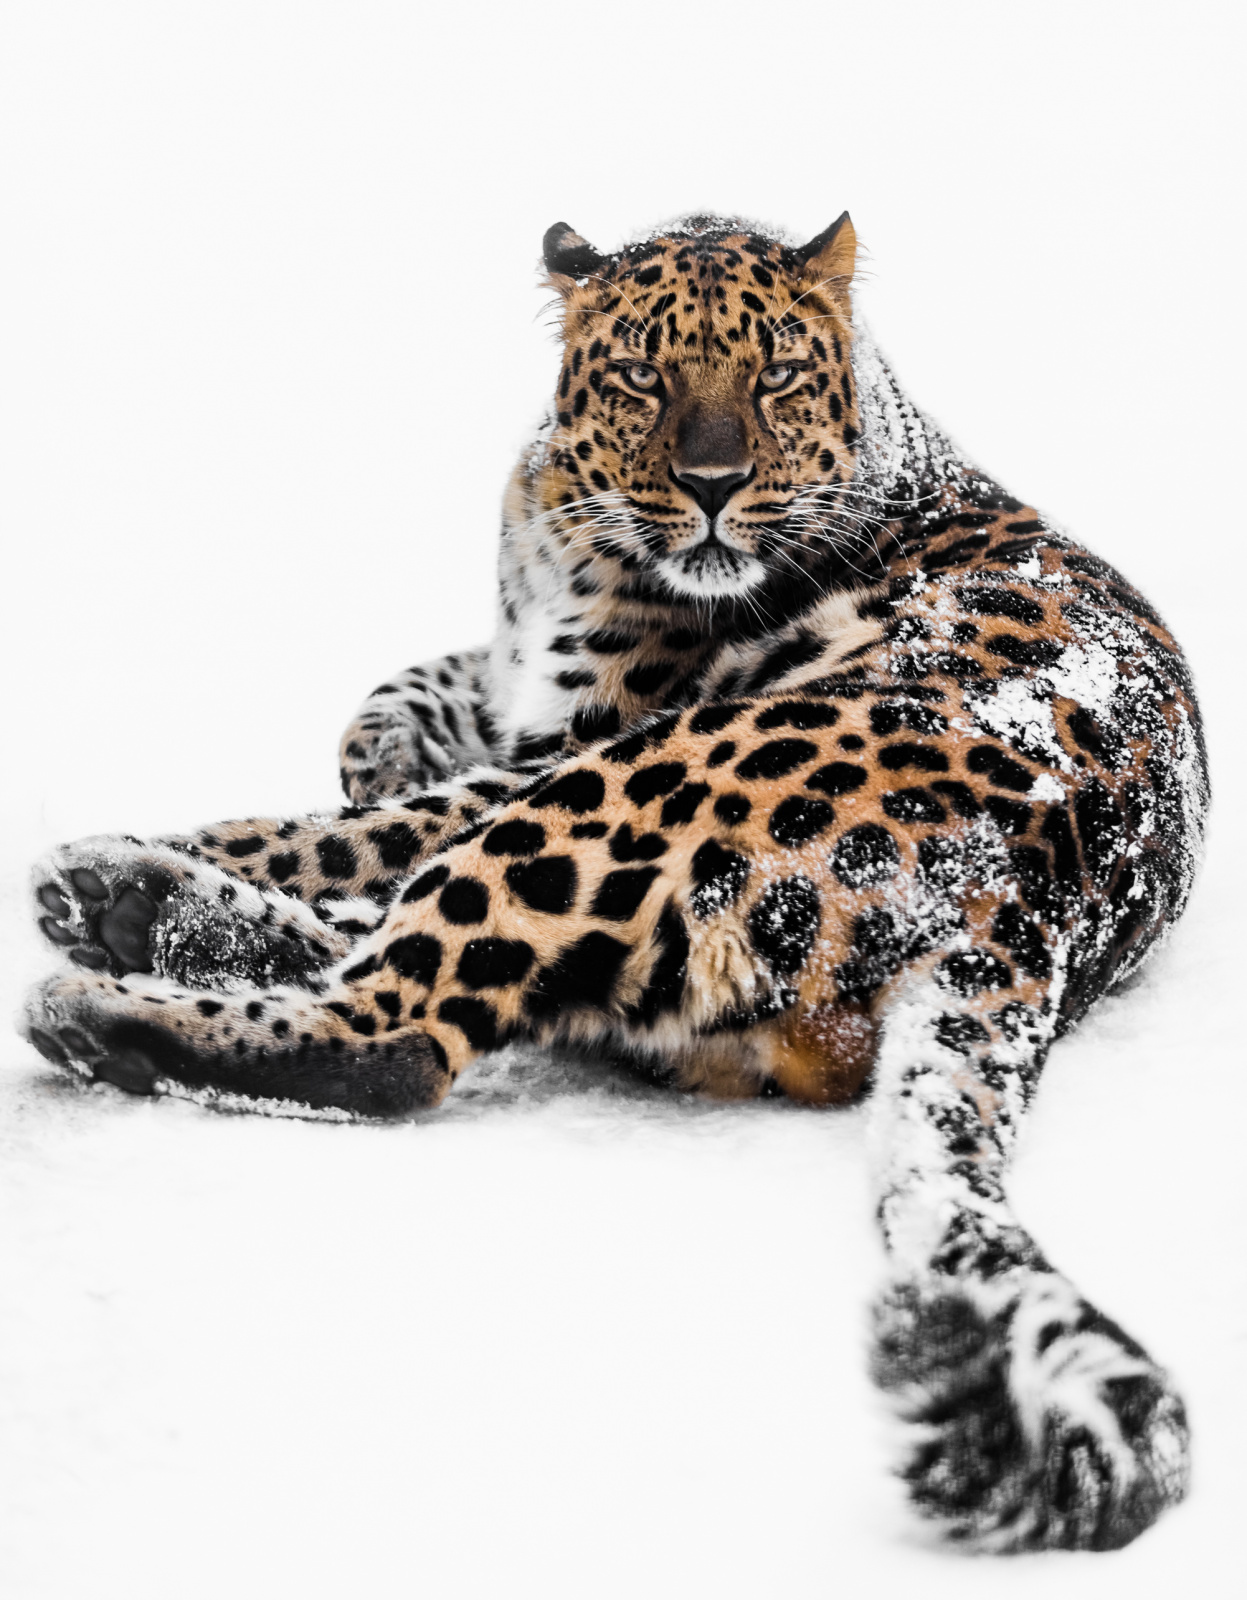 Дальневосточный леопард. Фото: Михаил Колесников, участник фотоконкурса РГО «Самая красивая страна»